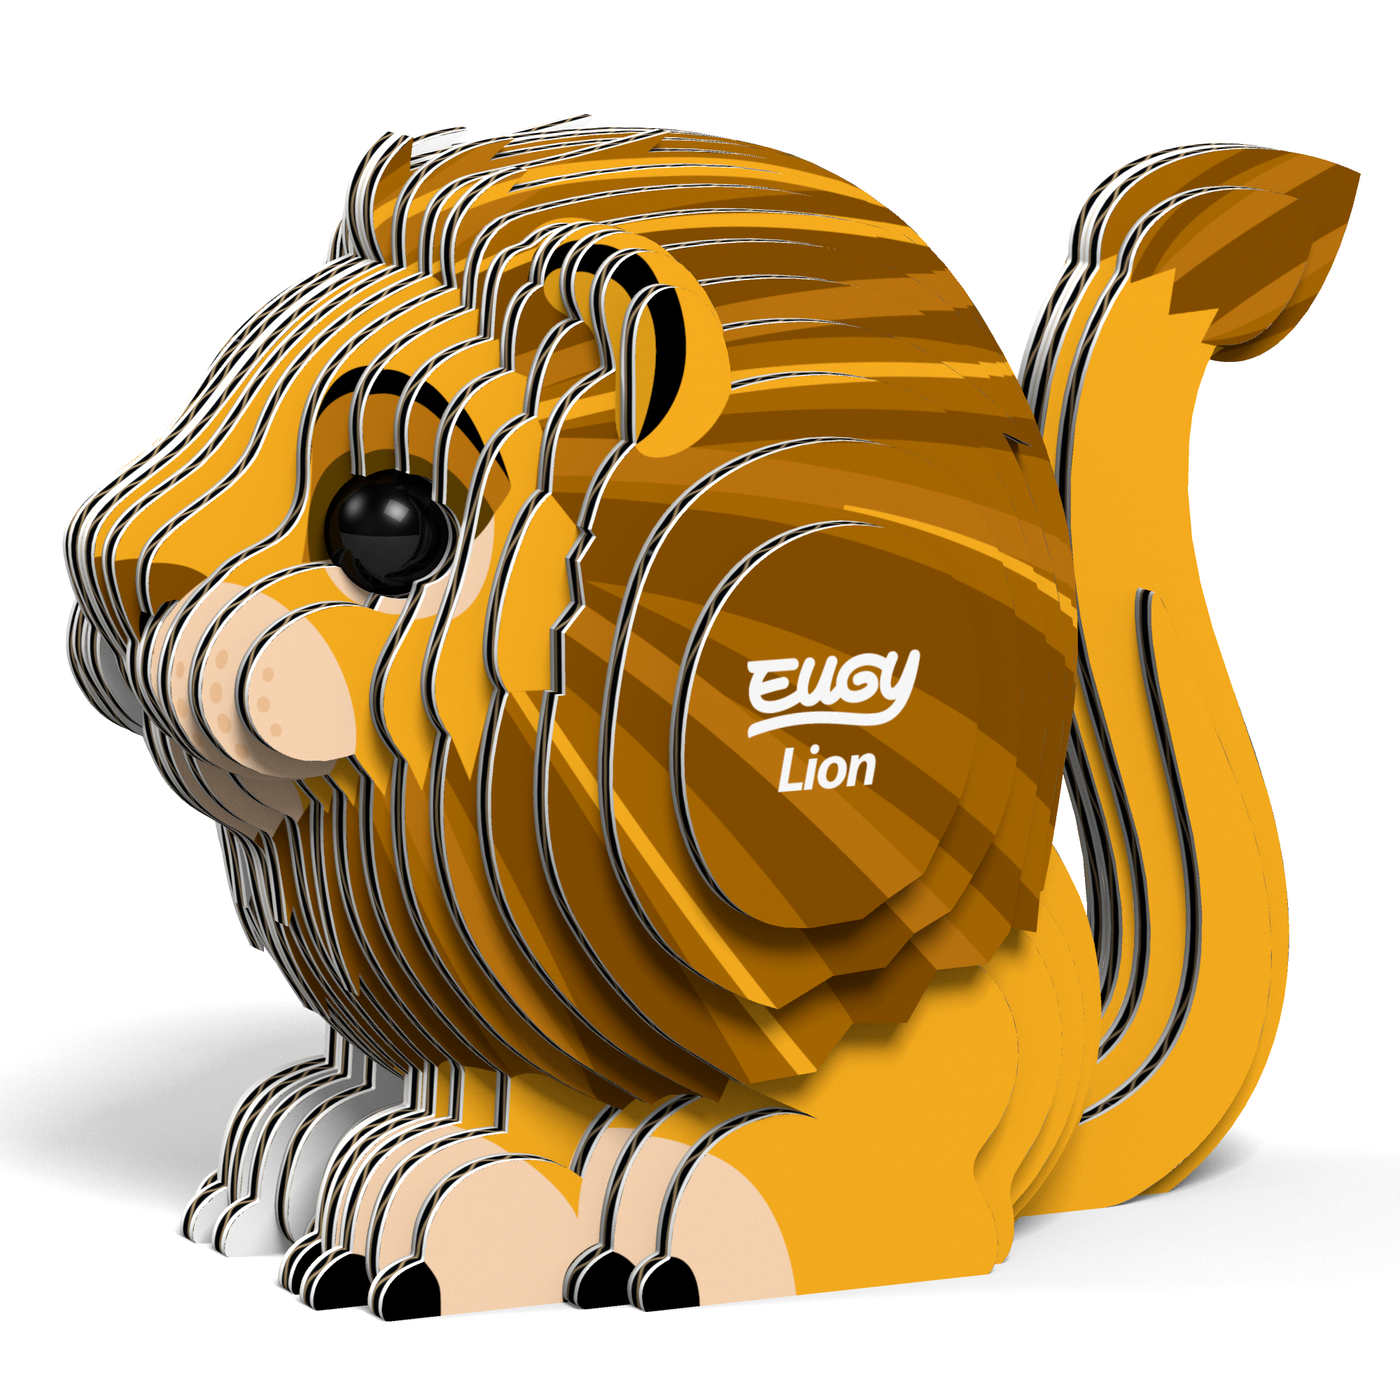 Lion EUGY - 3D Puzzle